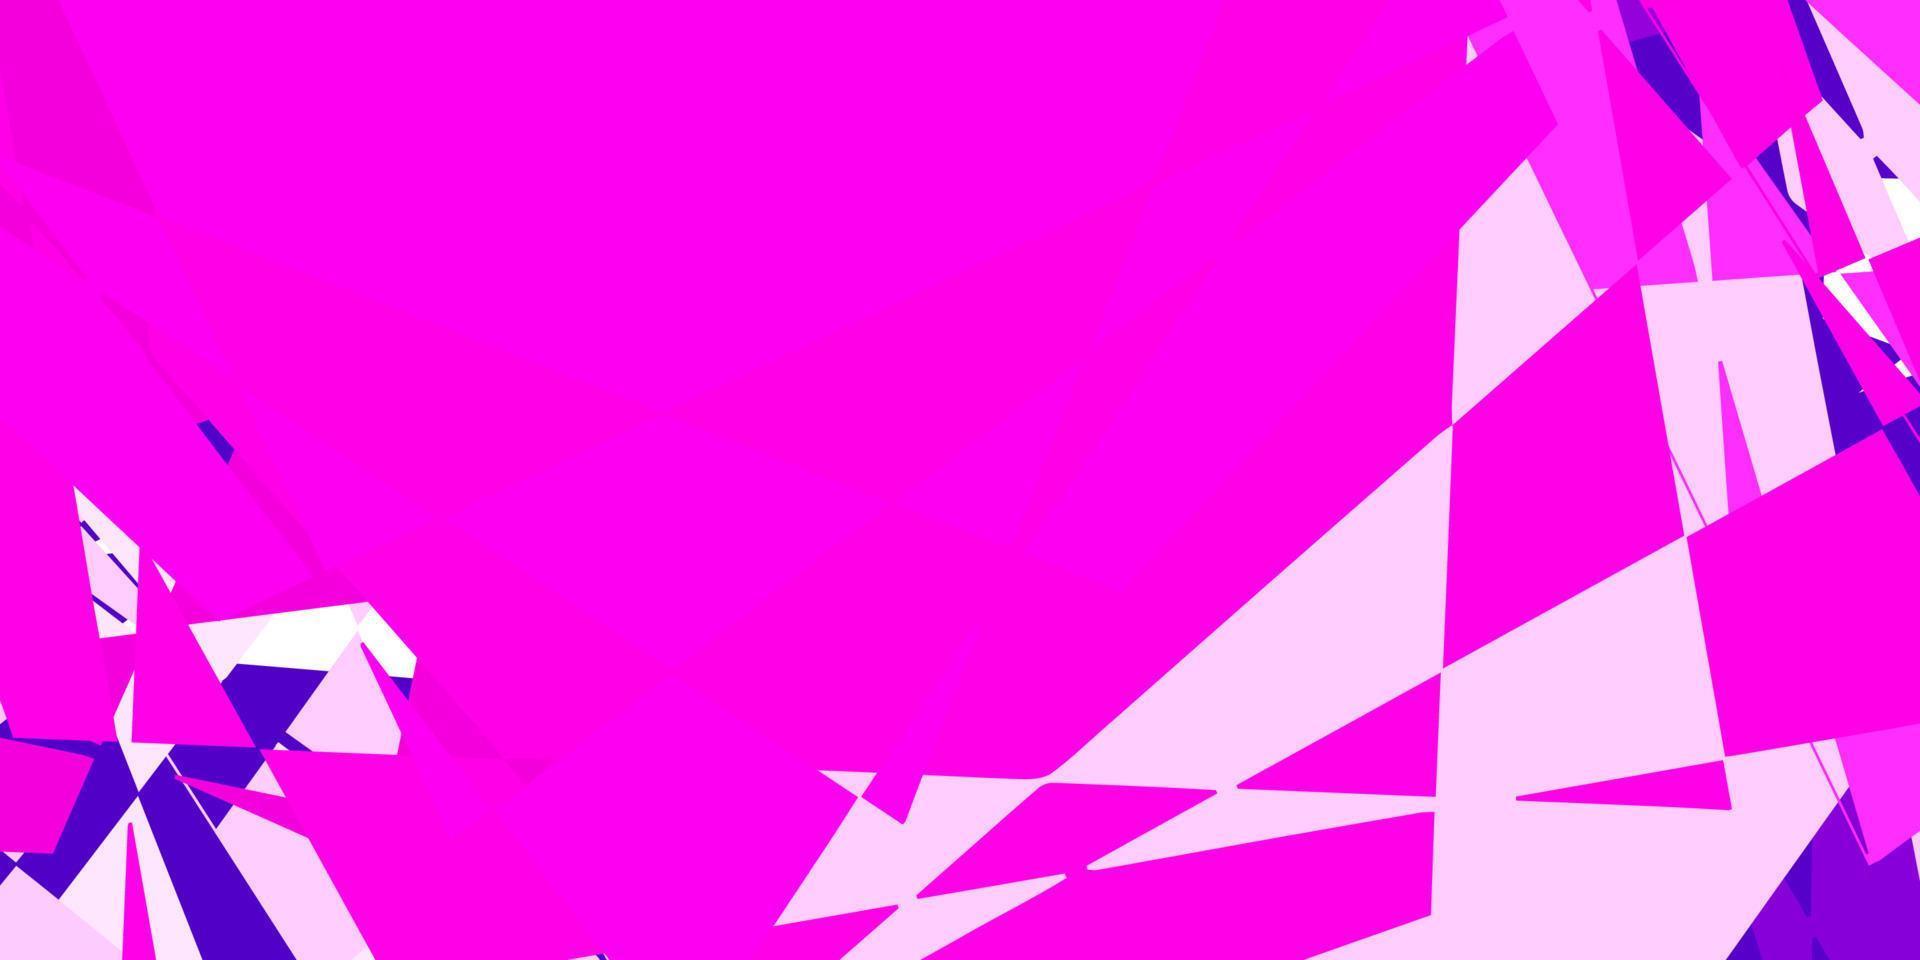 ljuslila, rosa vektorlayout med triangelformer. vektor